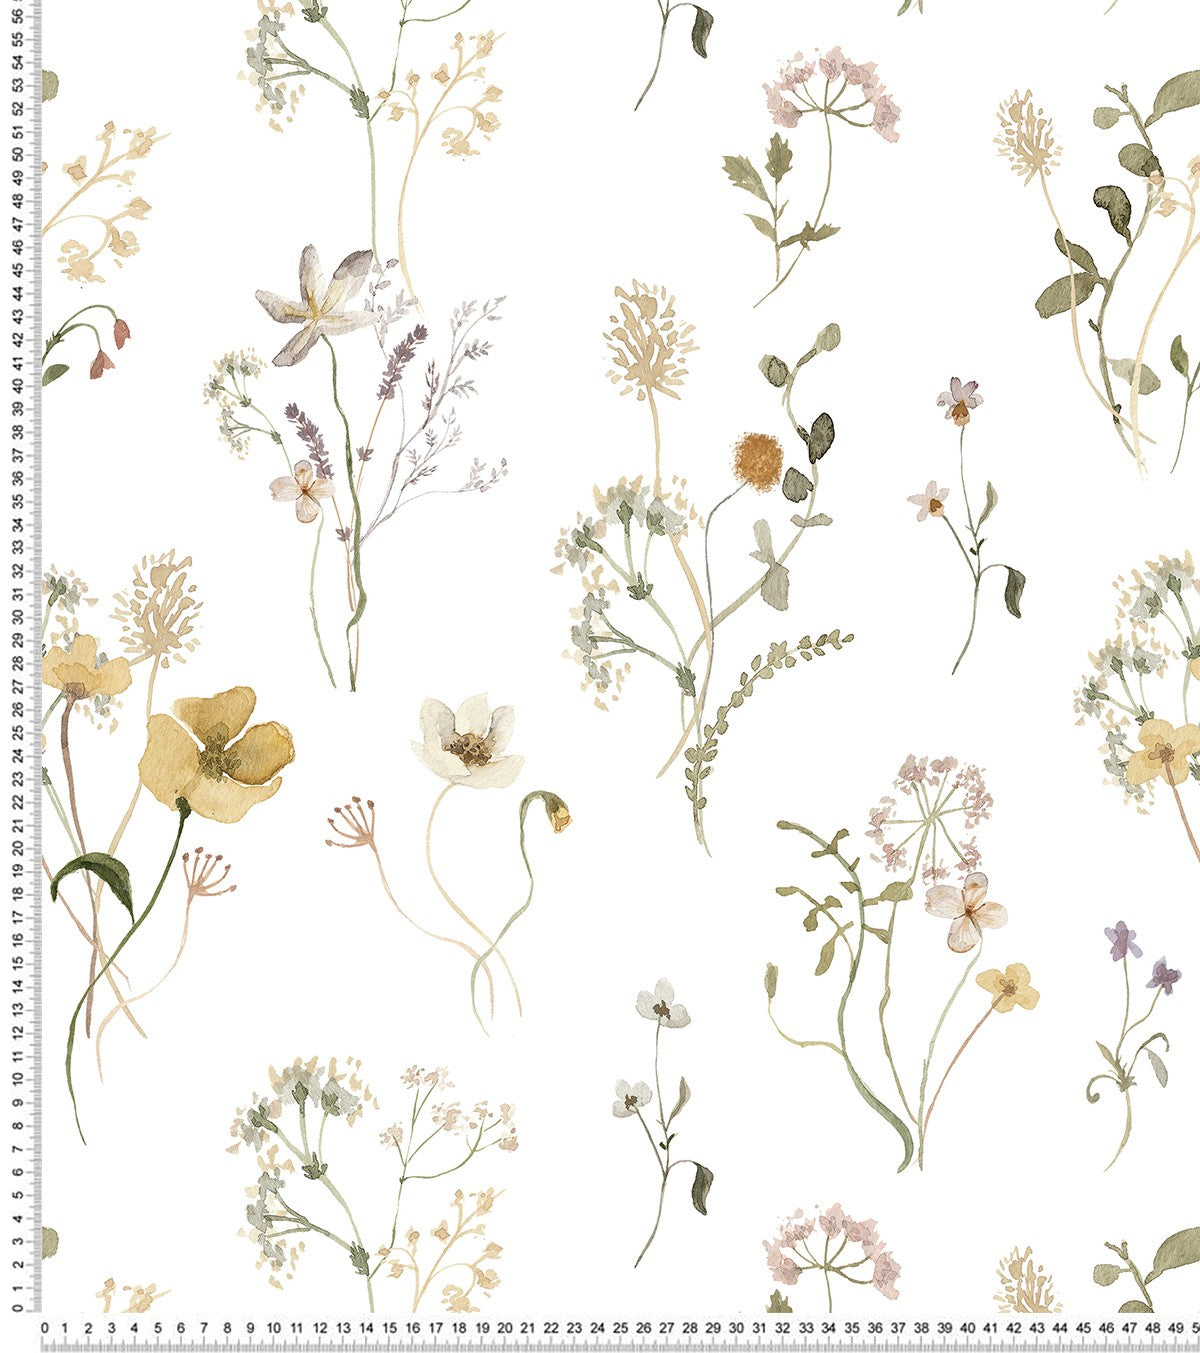 MADEMOISELLE - Children's wallpaper - Botany motif